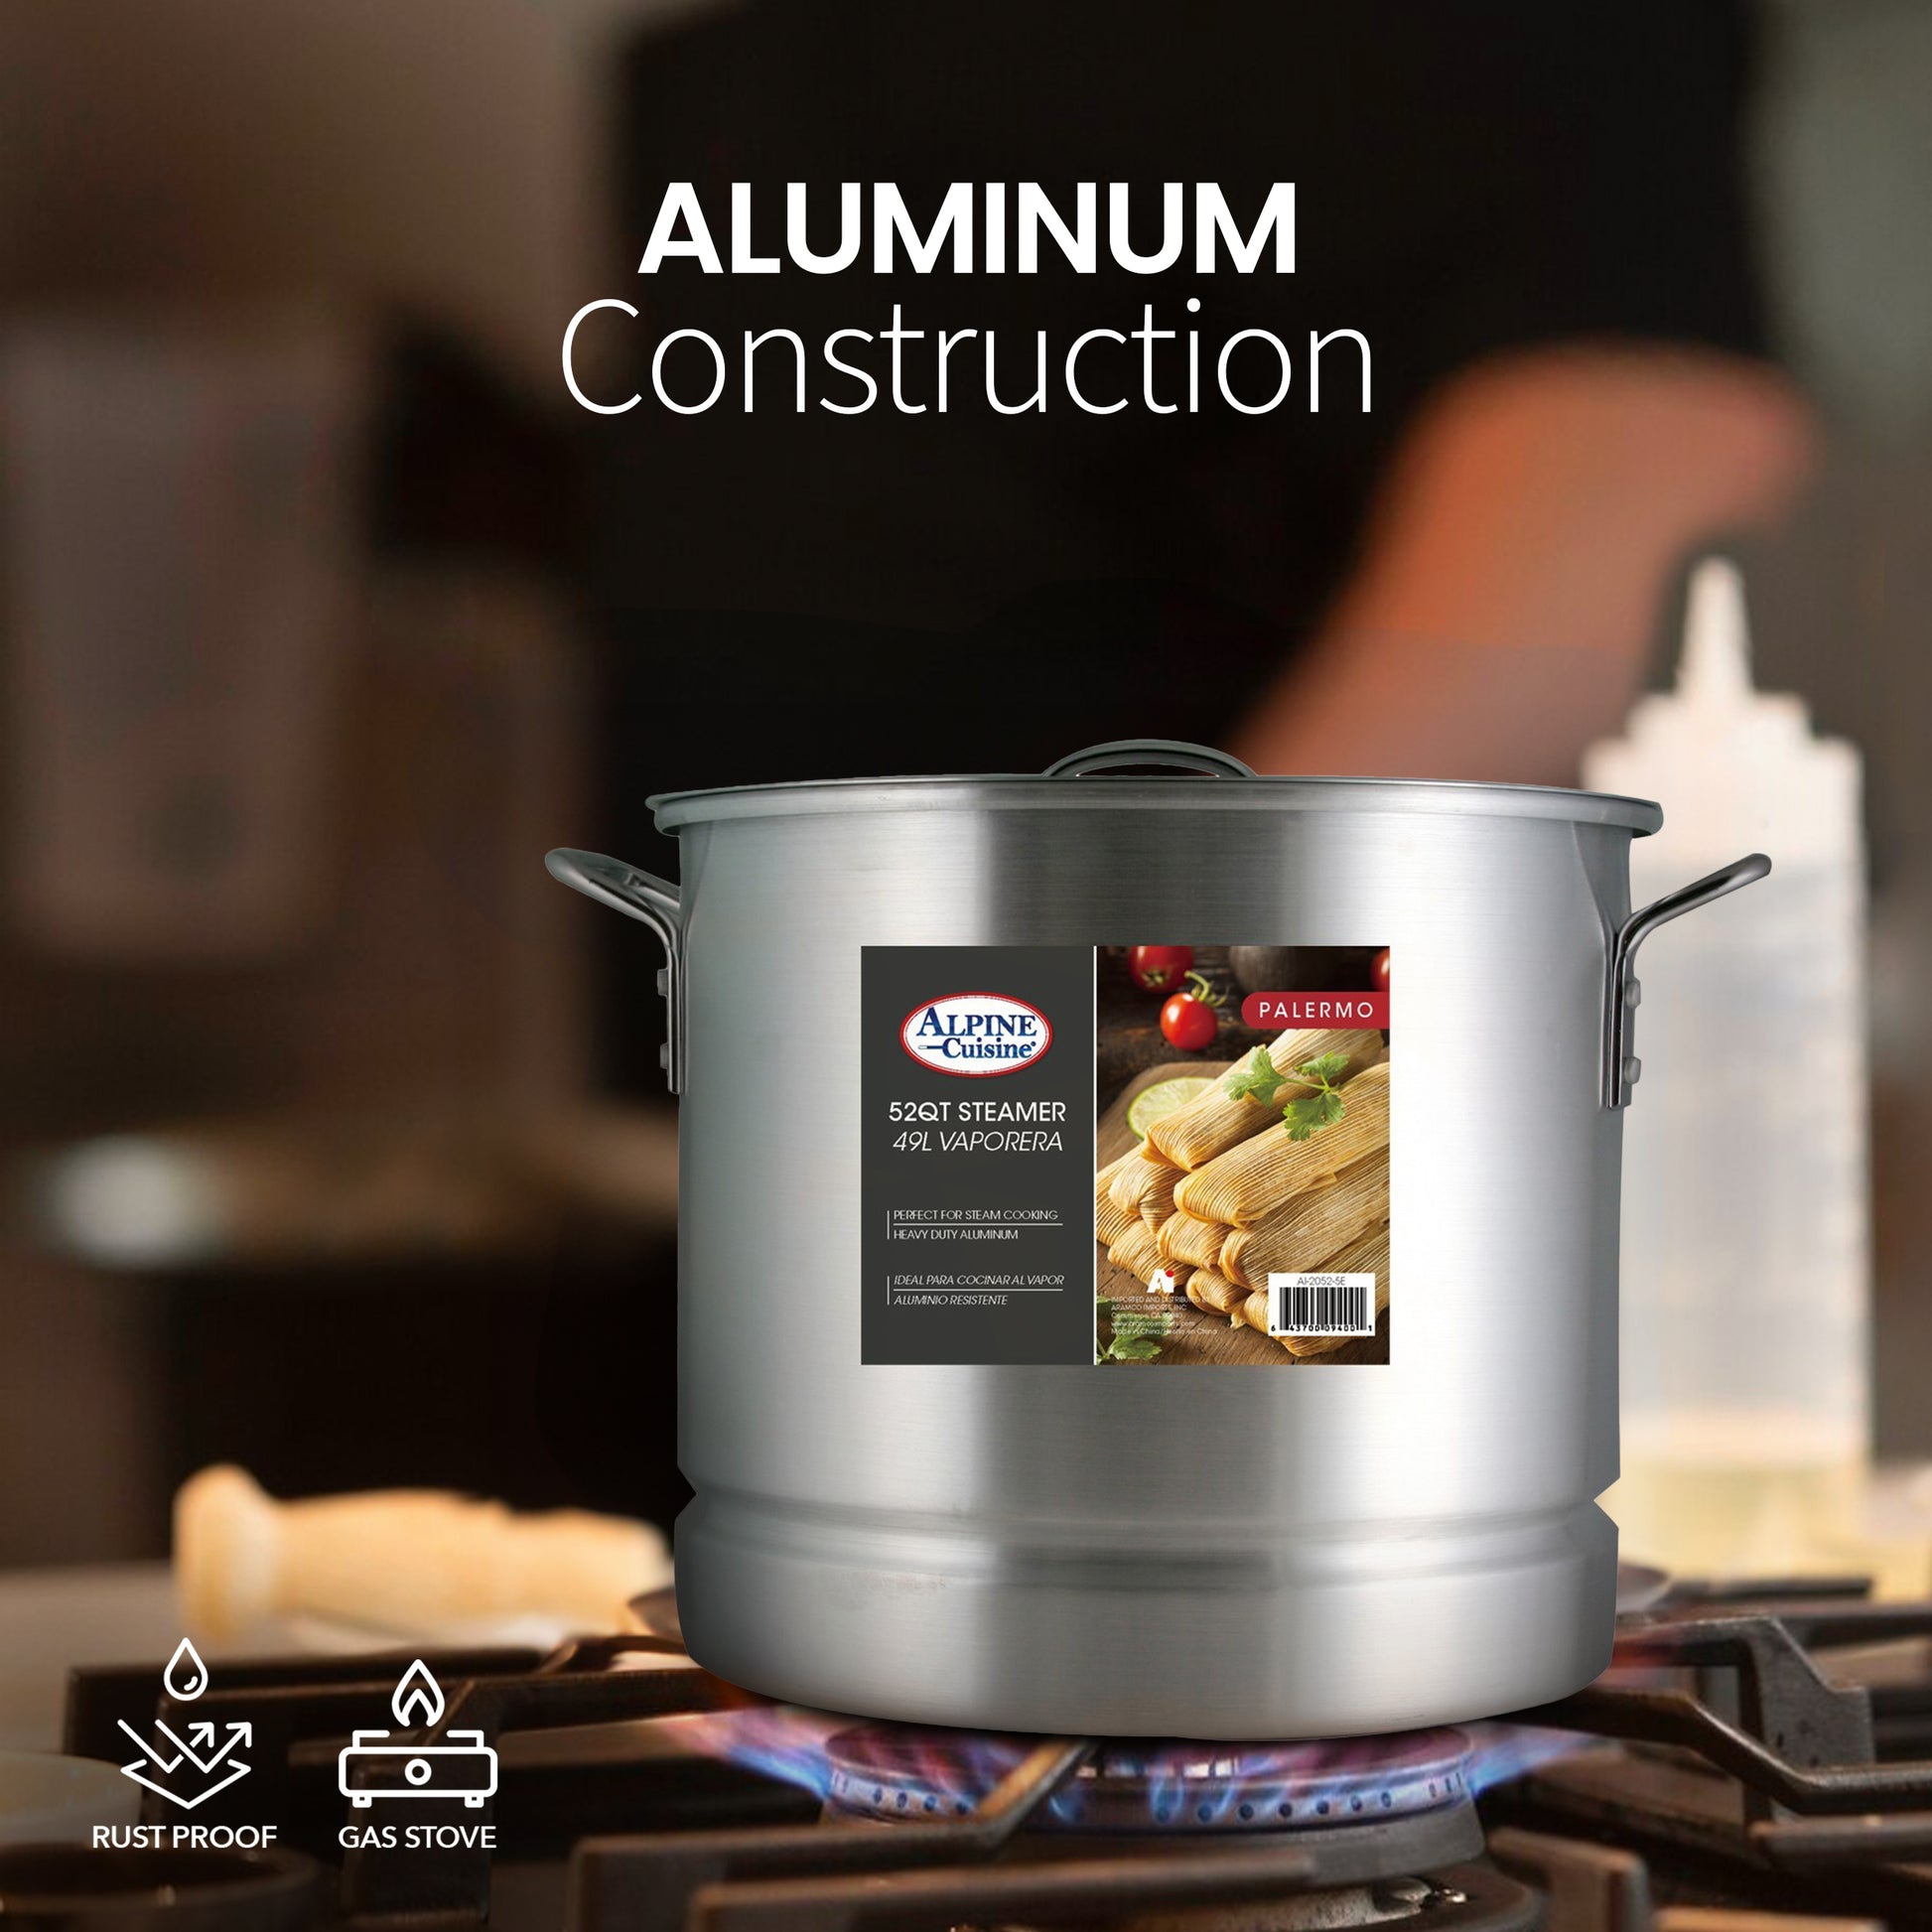 Alpine Cuisine Aluminum Steamer Pot 12 Pcs Set Cook Healthier and Fast